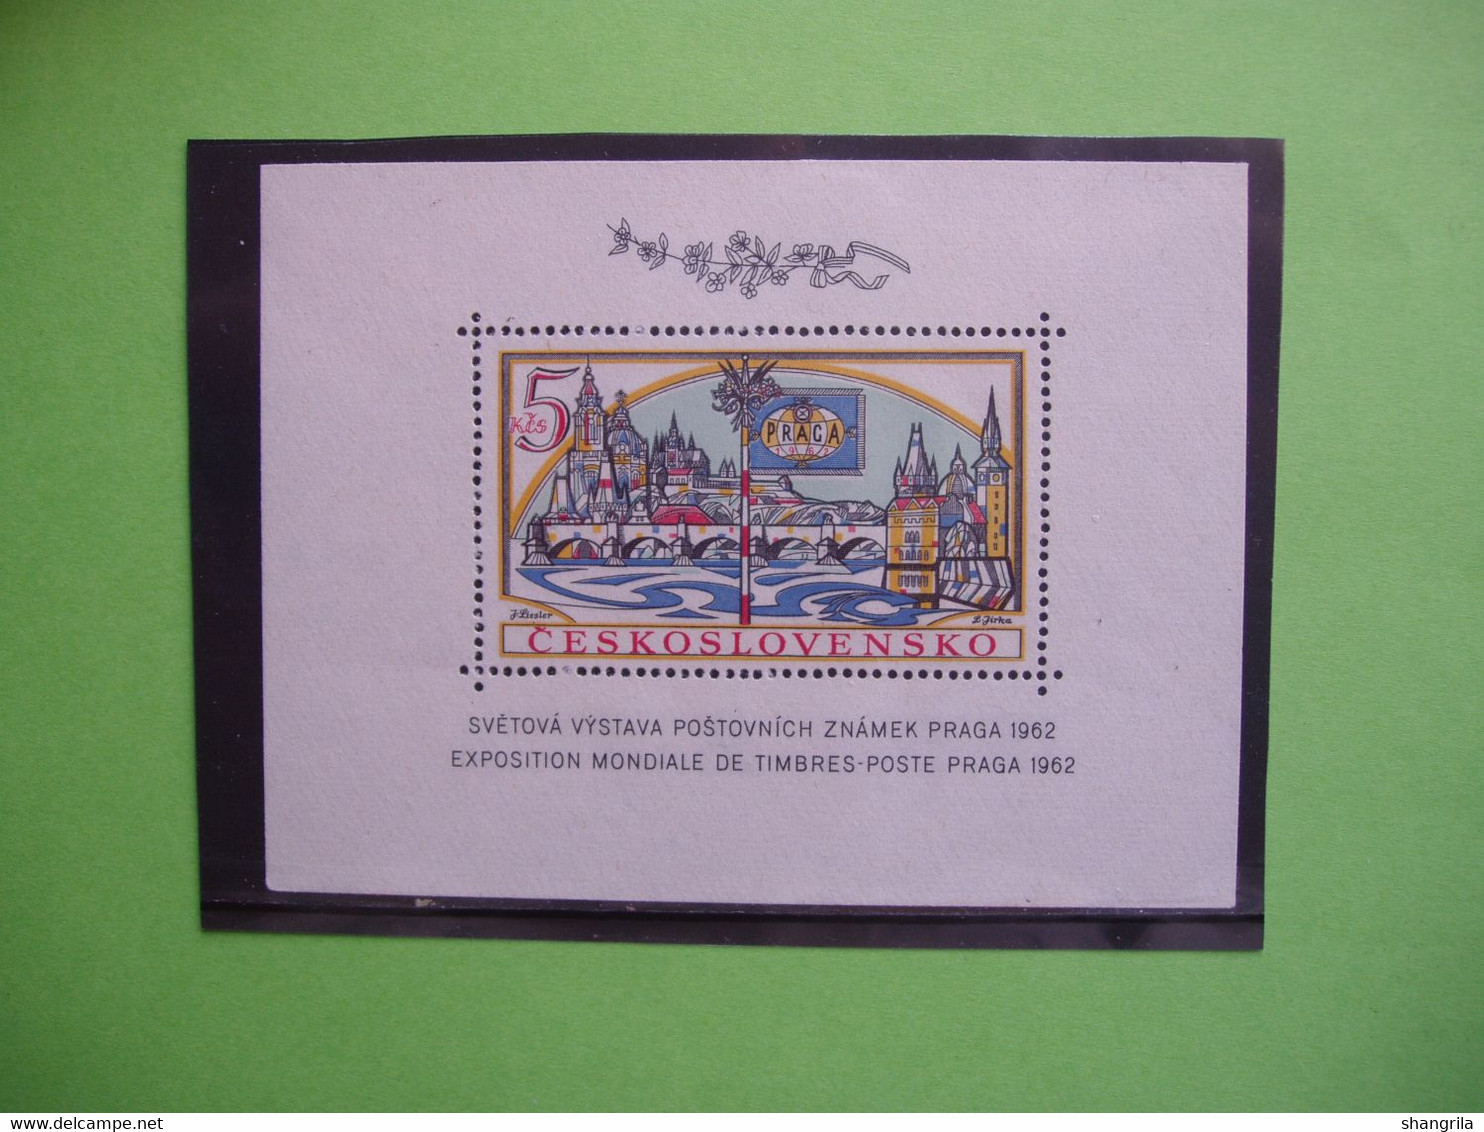 AC 405   timbres  blocs feuillets Tchécoslovaquie  CZ  thèmes  Bonne cote